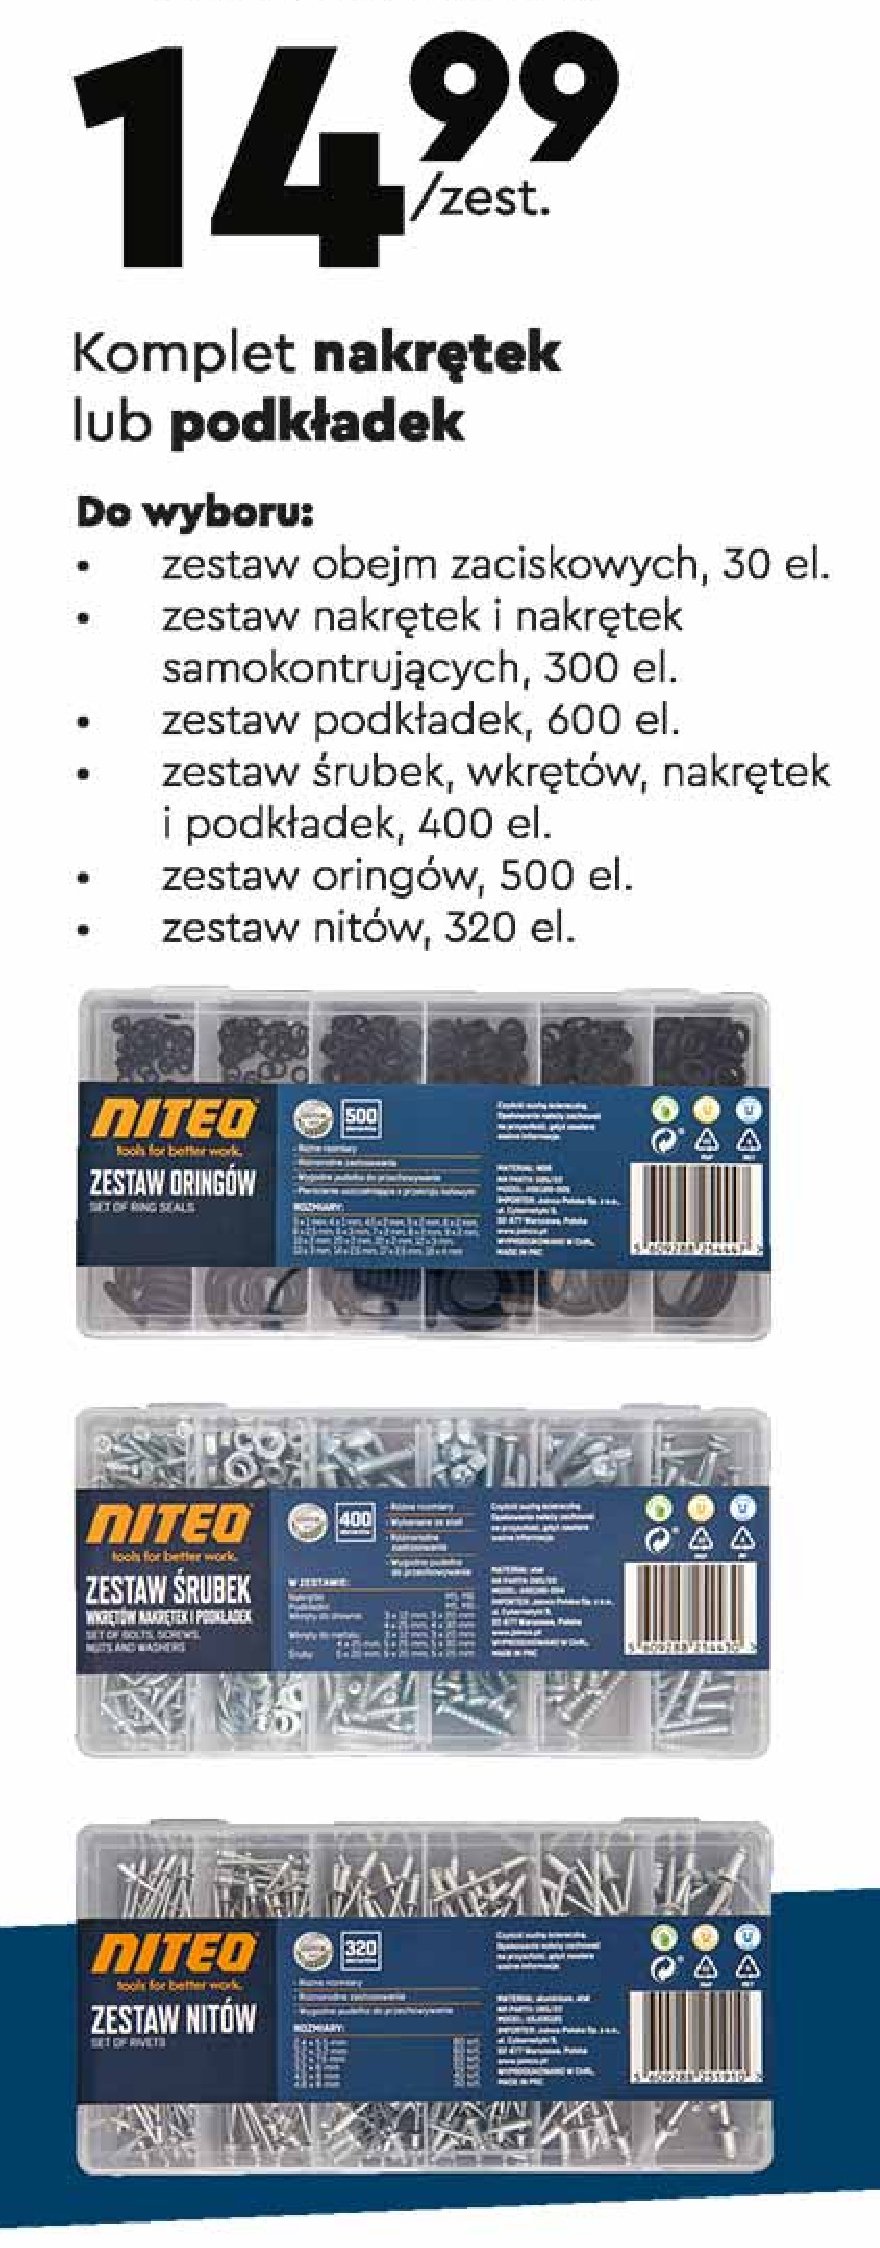 Zestaw nitów Niteo tools promocja